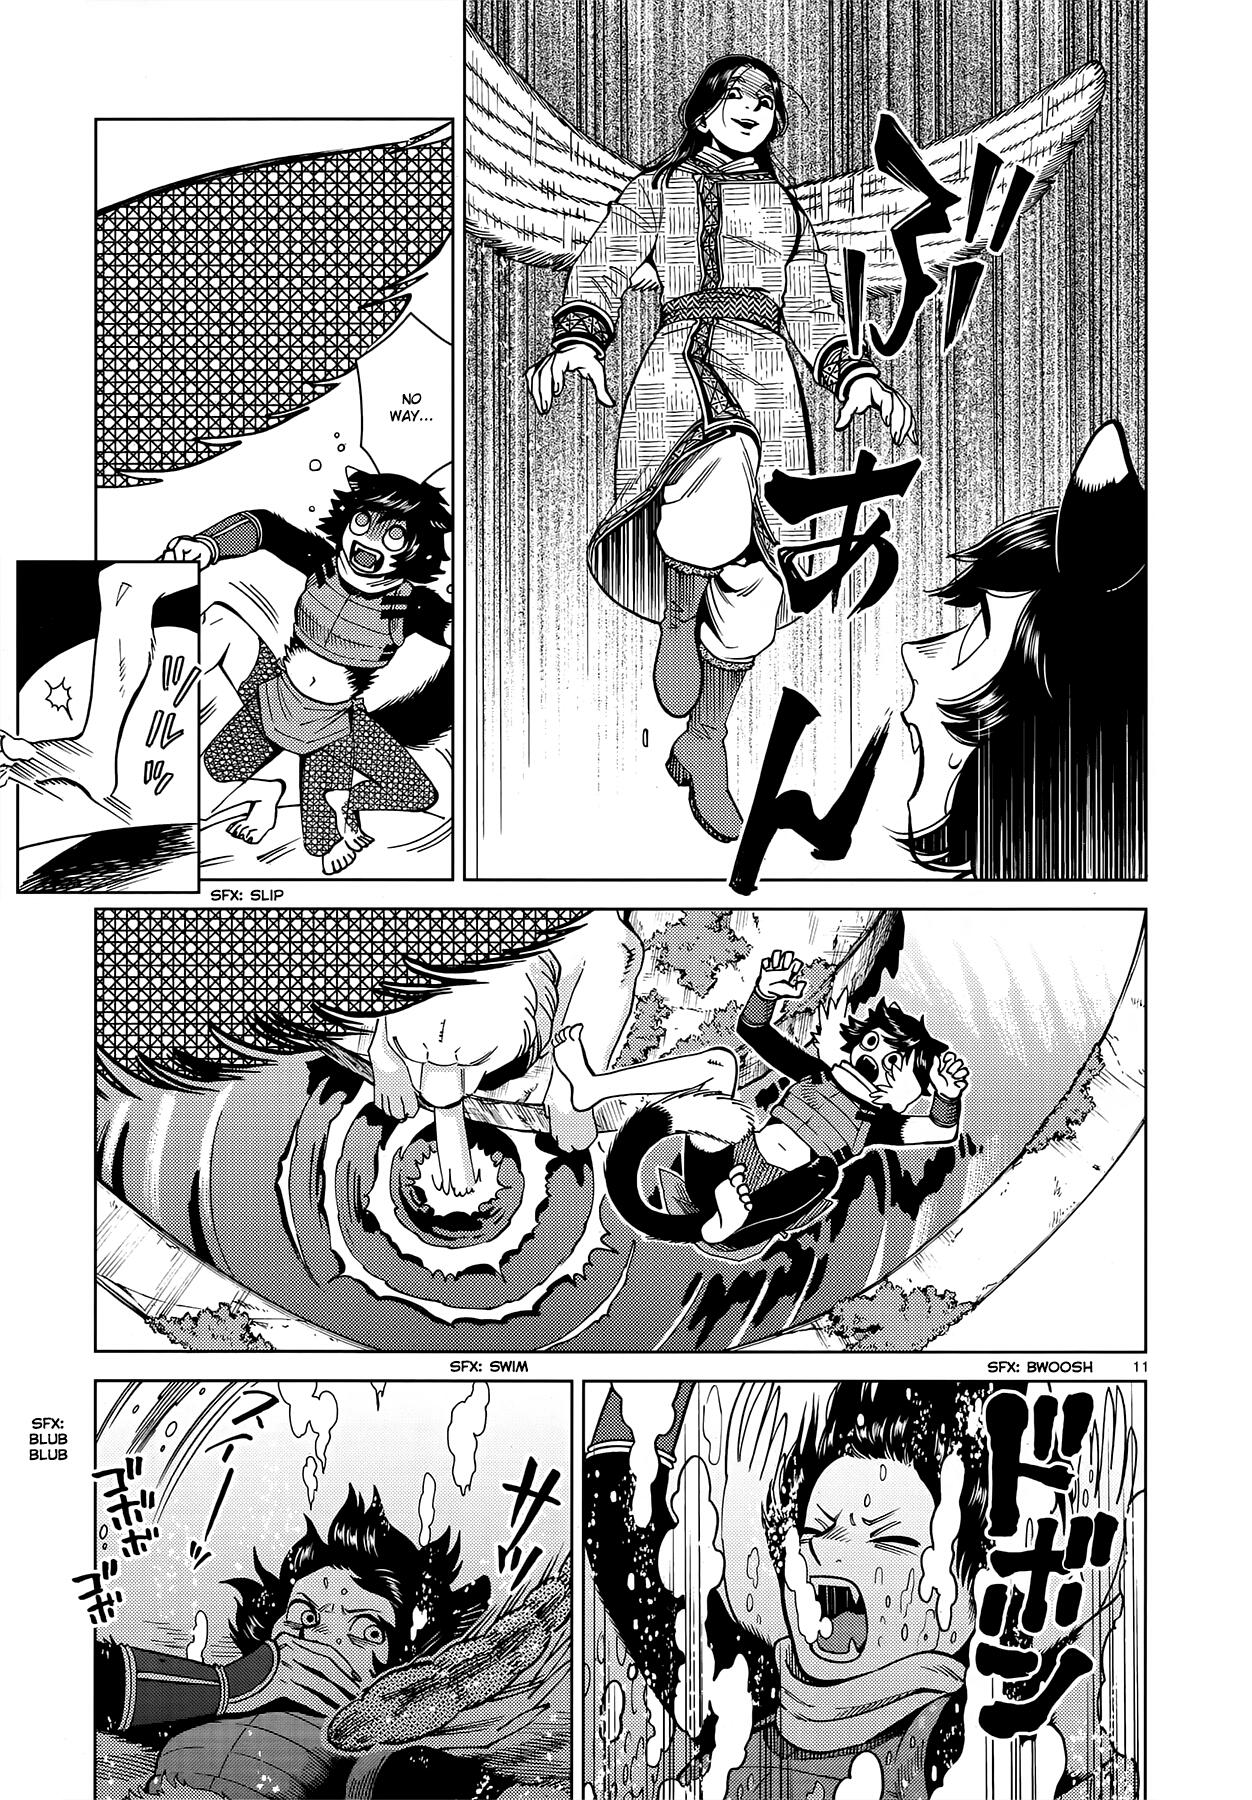 Dungeon Meshi Chapter 59: Succubus, Part Ii page 11 - Mangakakalot